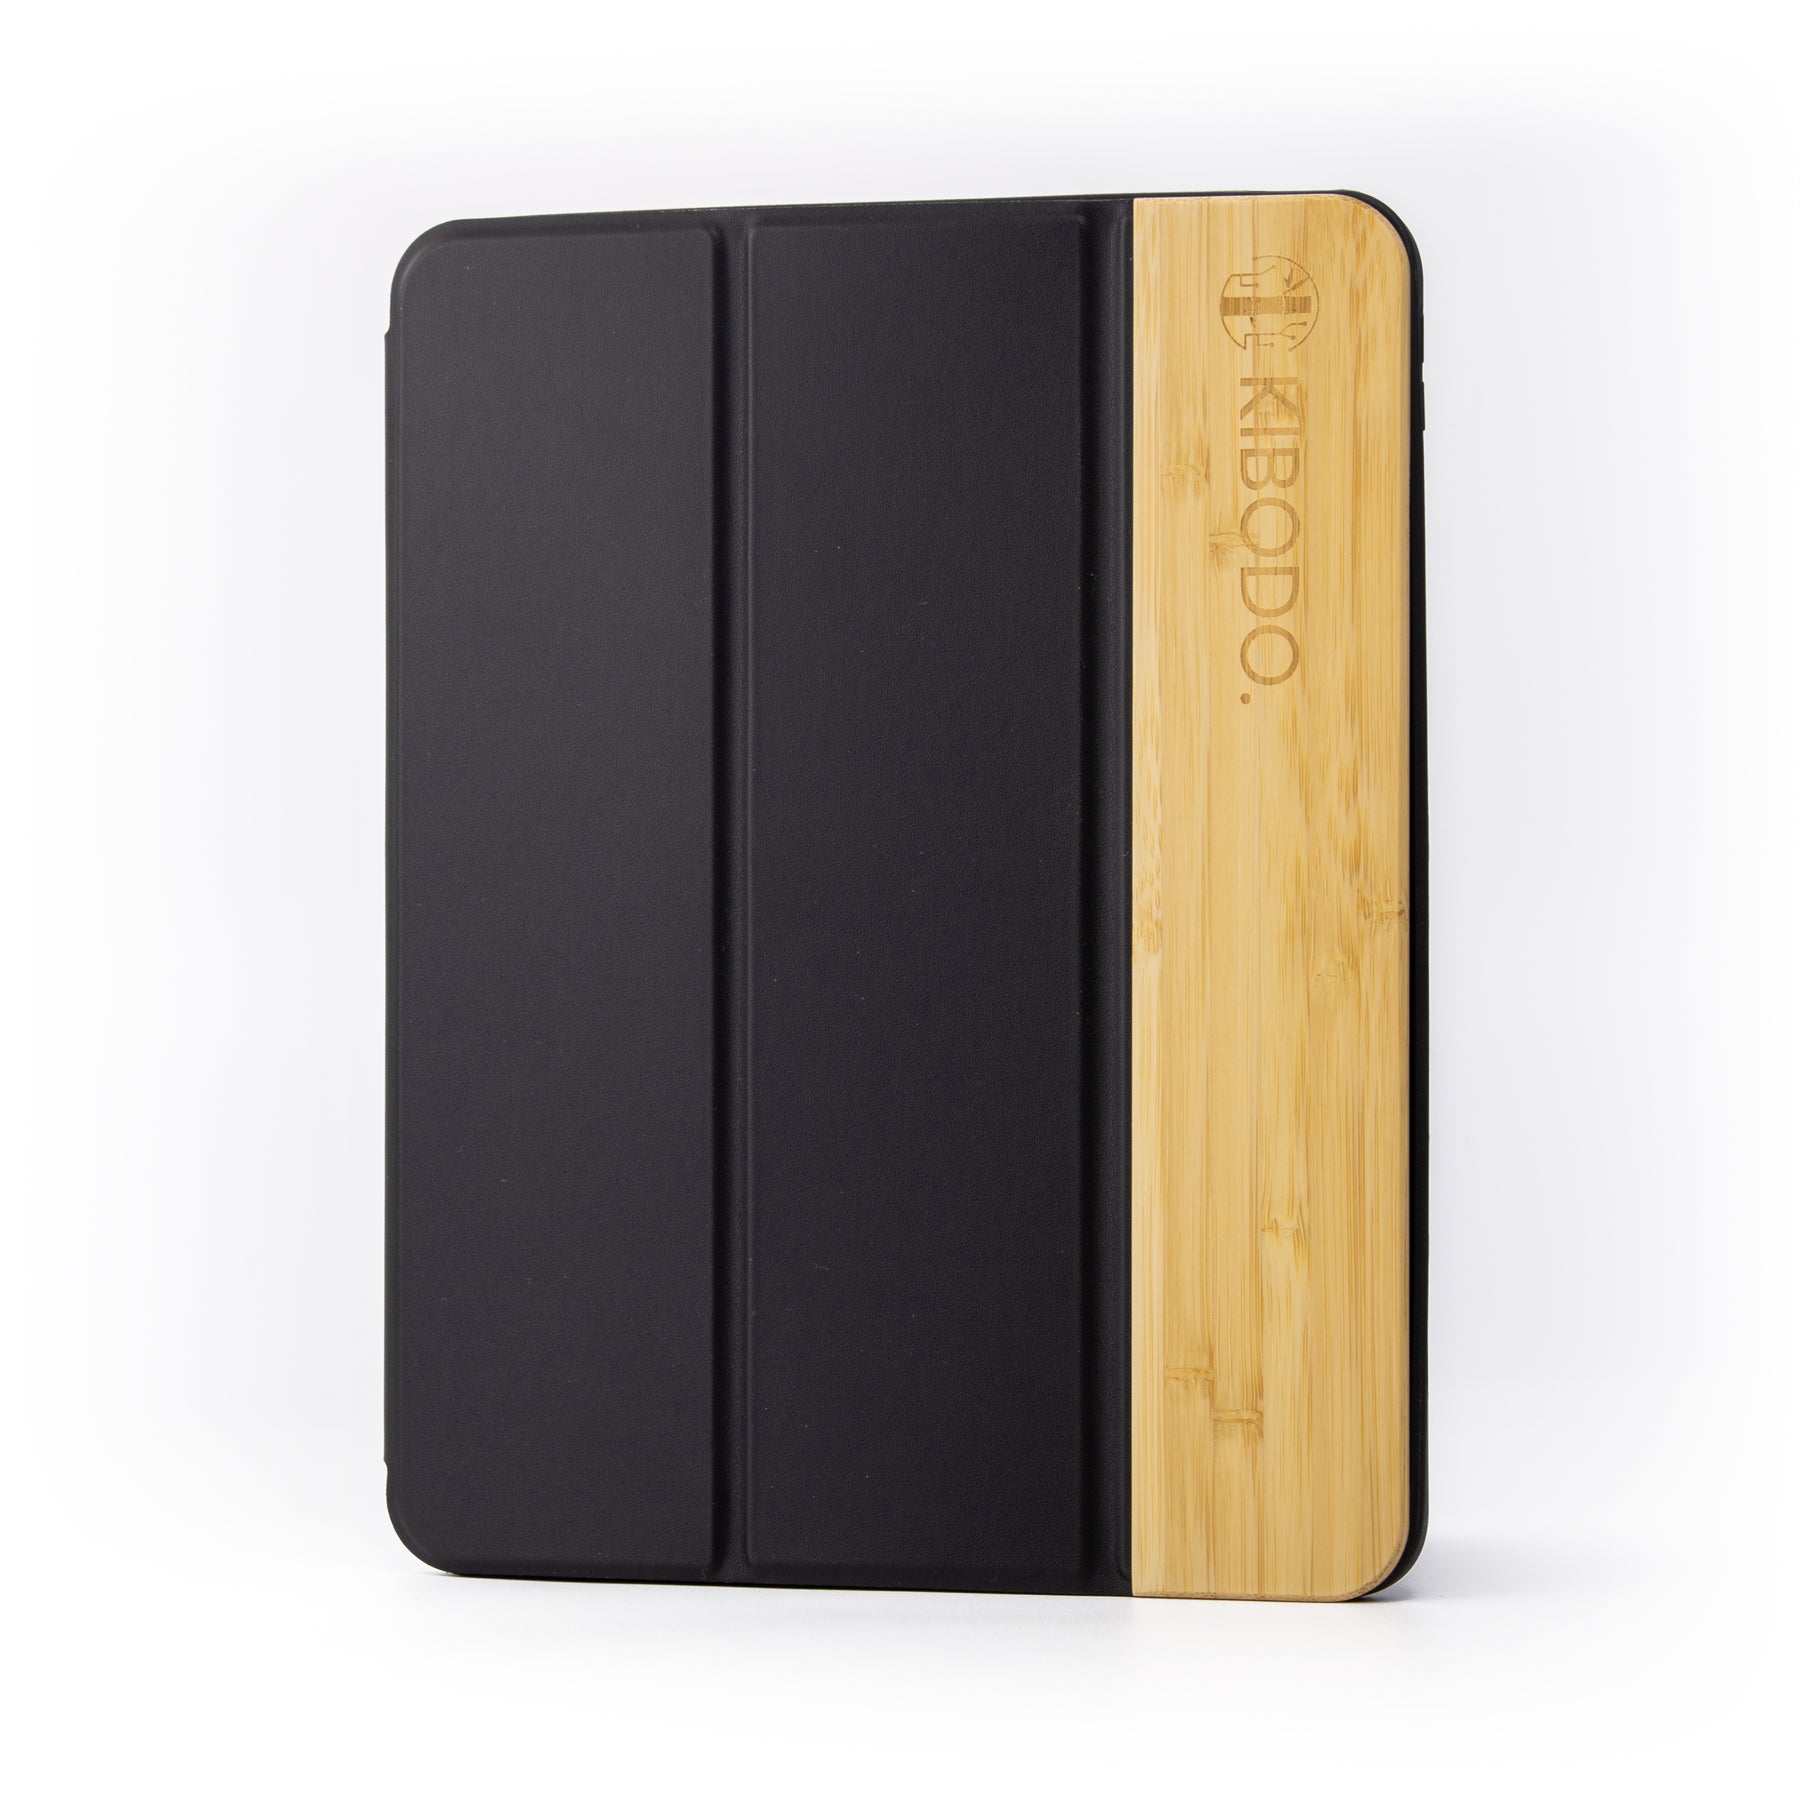 Coque iPad Pro 11 pouces en bois - Protection anti-choc